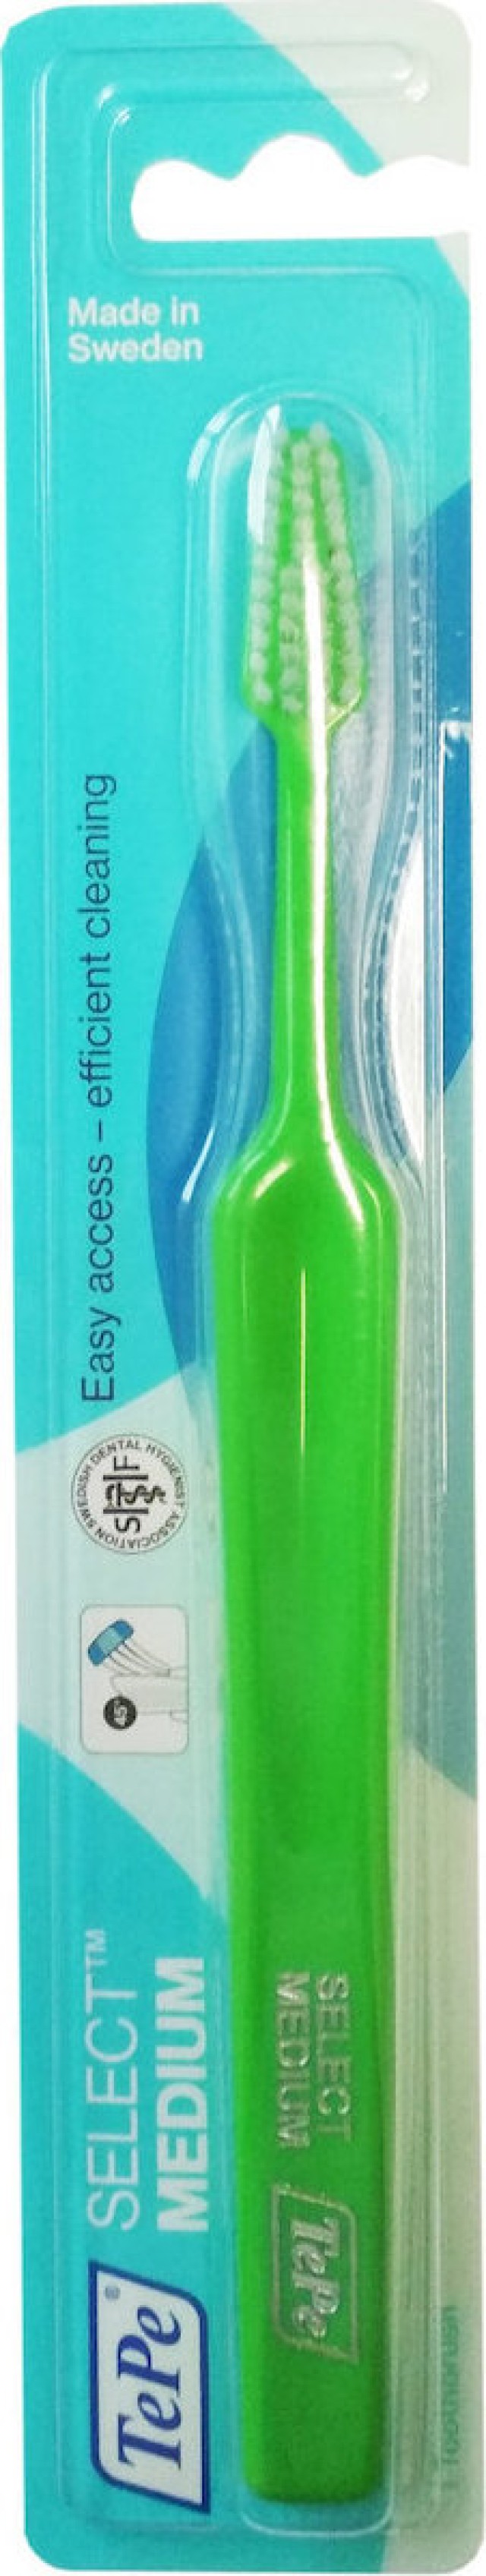 TePe Select Medium Μέτρια Οδοντόβουρτσα Σε Διάφορα Χρώματα, 1τμχ